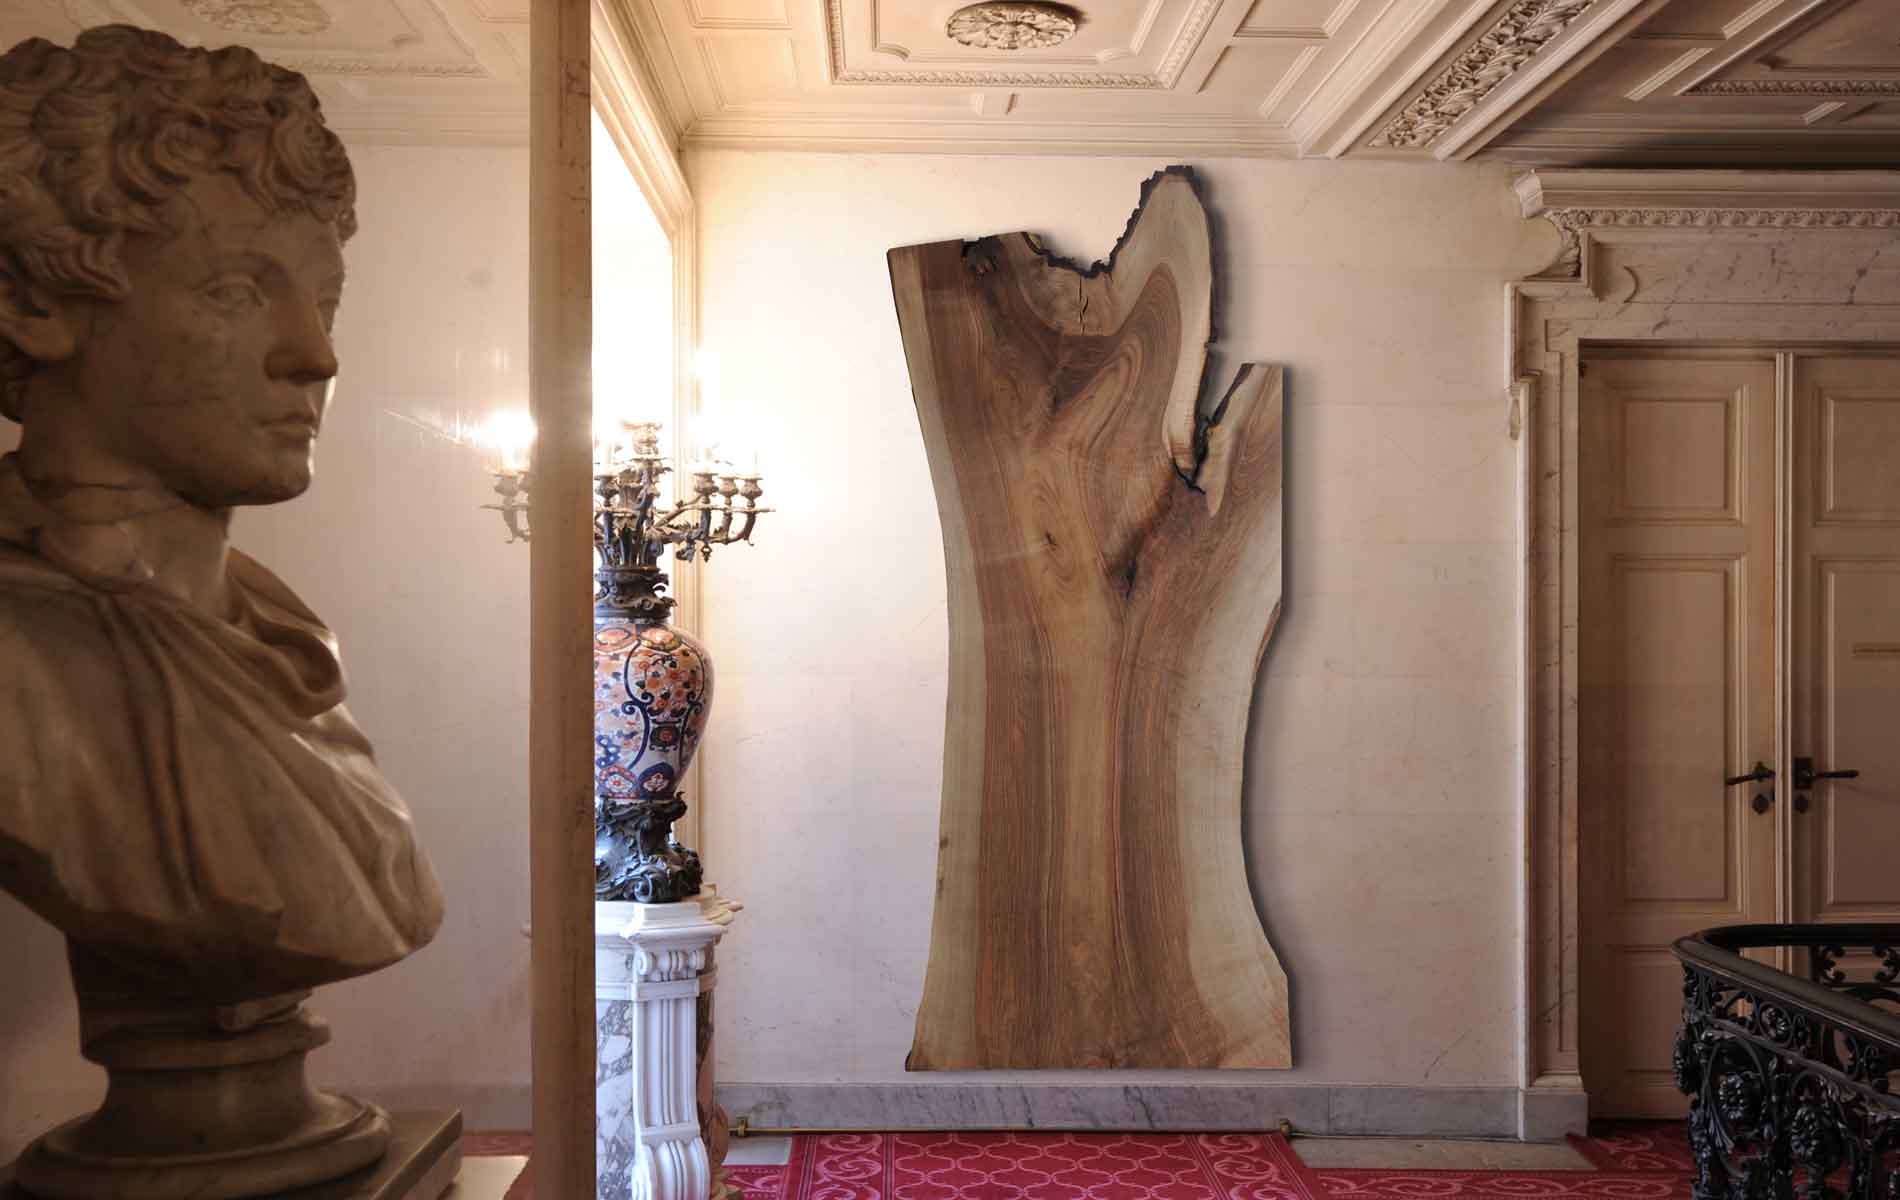 Scultura in legno da un tronco d'albero